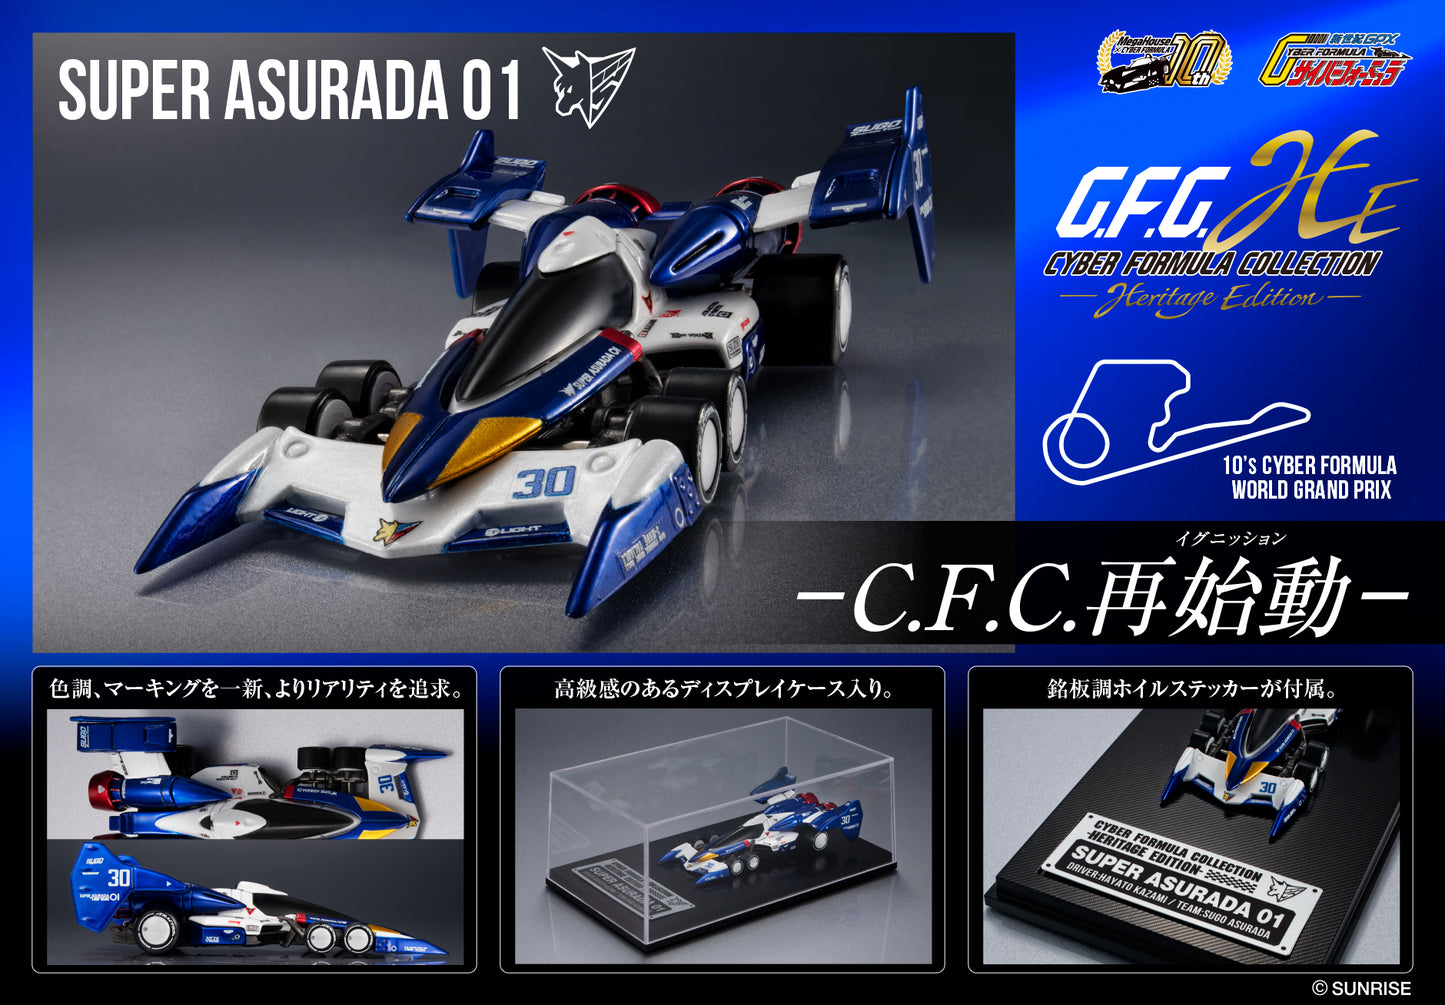 Cyber Formura Collection -Heritage Edition- "Future GPX Cyber Formula" Super Asurada 01